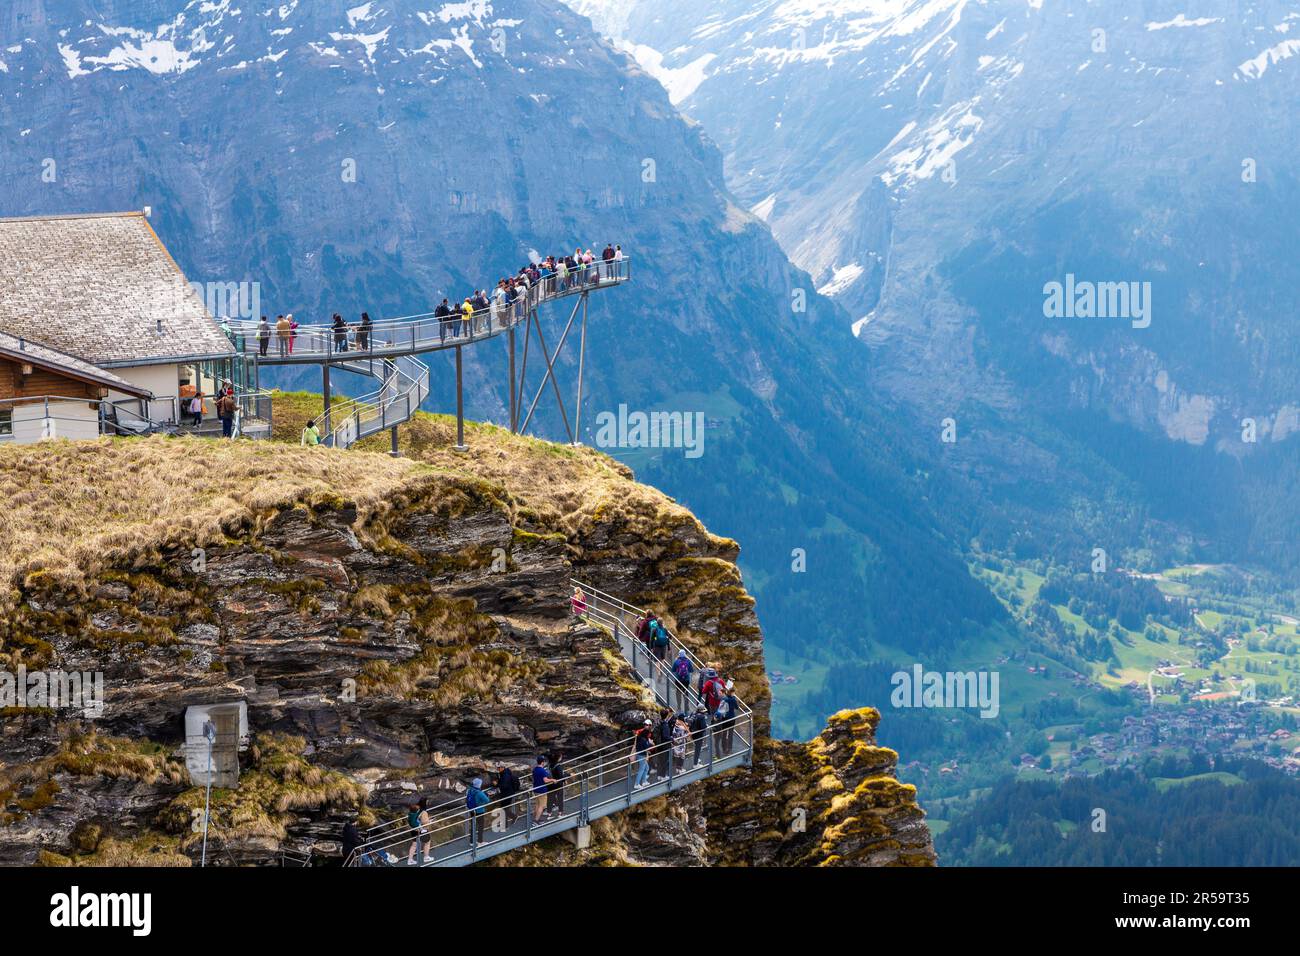 La gente en el primer acantilado camina en la primera cumbre de la montaña, Suiza Foto de stock